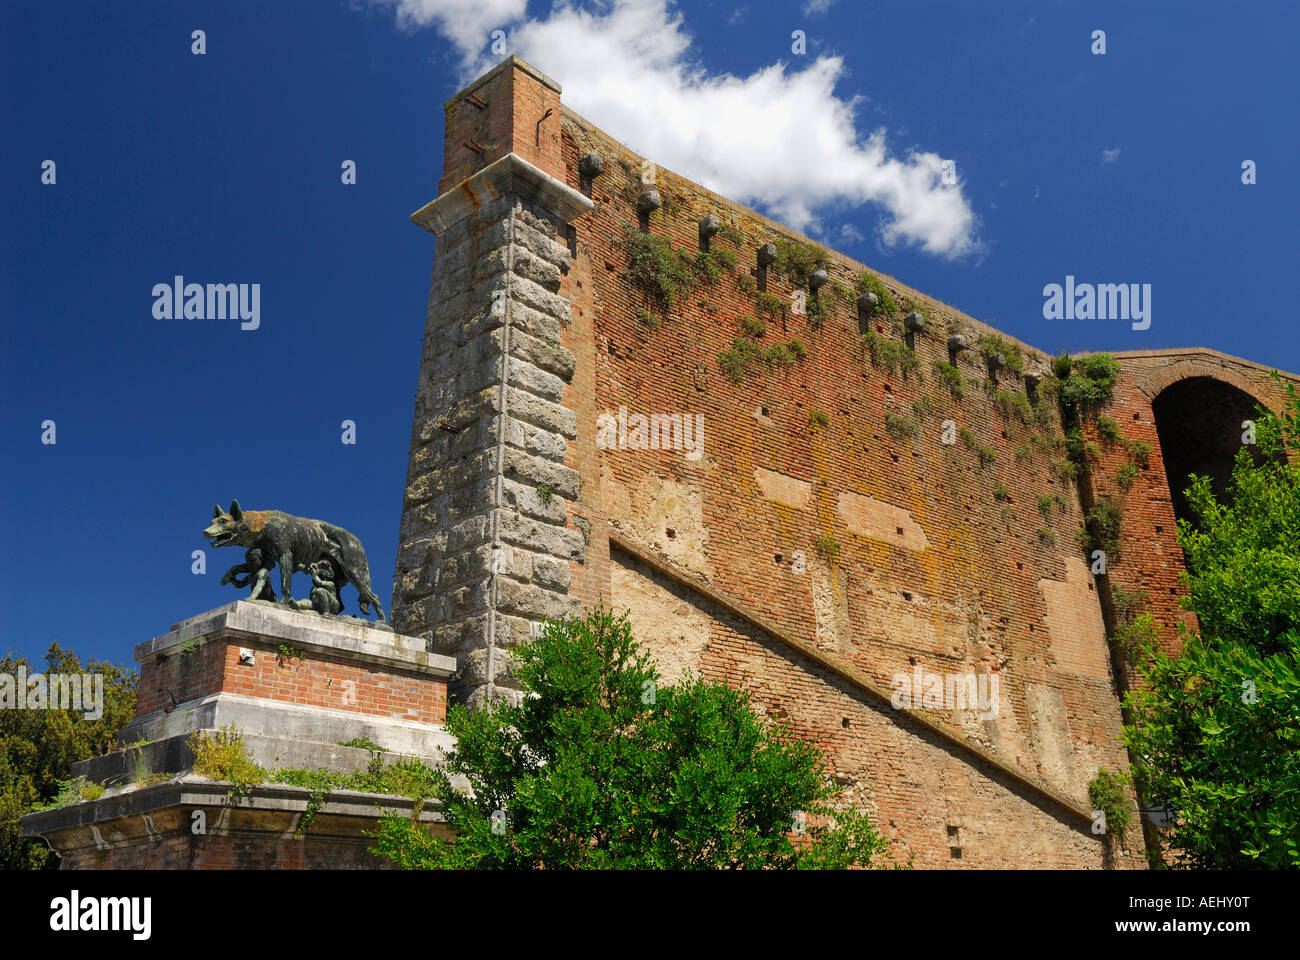 Ancien mur et la porte dans la vieille ville de Sienne Toscane Italie avec statue romaine de Romulus et Remus suckling elle wolf avec ciel bleu Banque D'Images